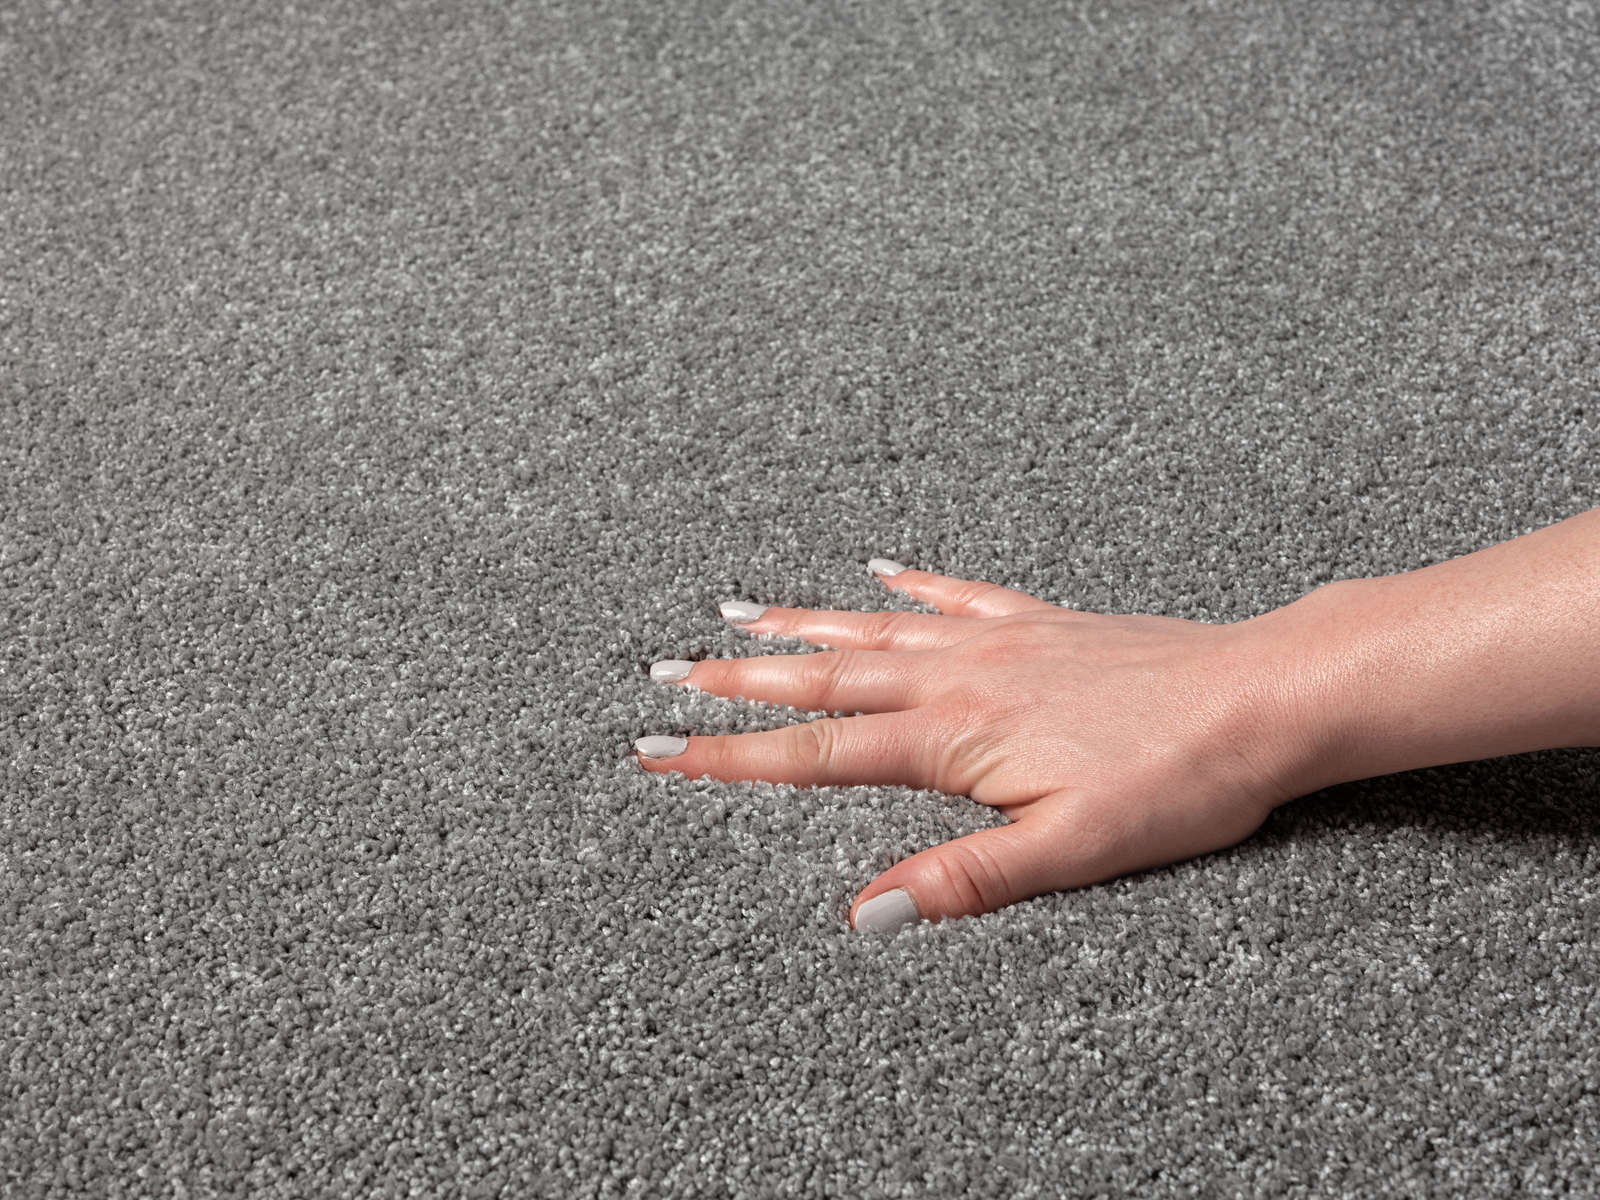             Flauschiger Kurzflor Teppich in Grau – 200 x 140 cm
        